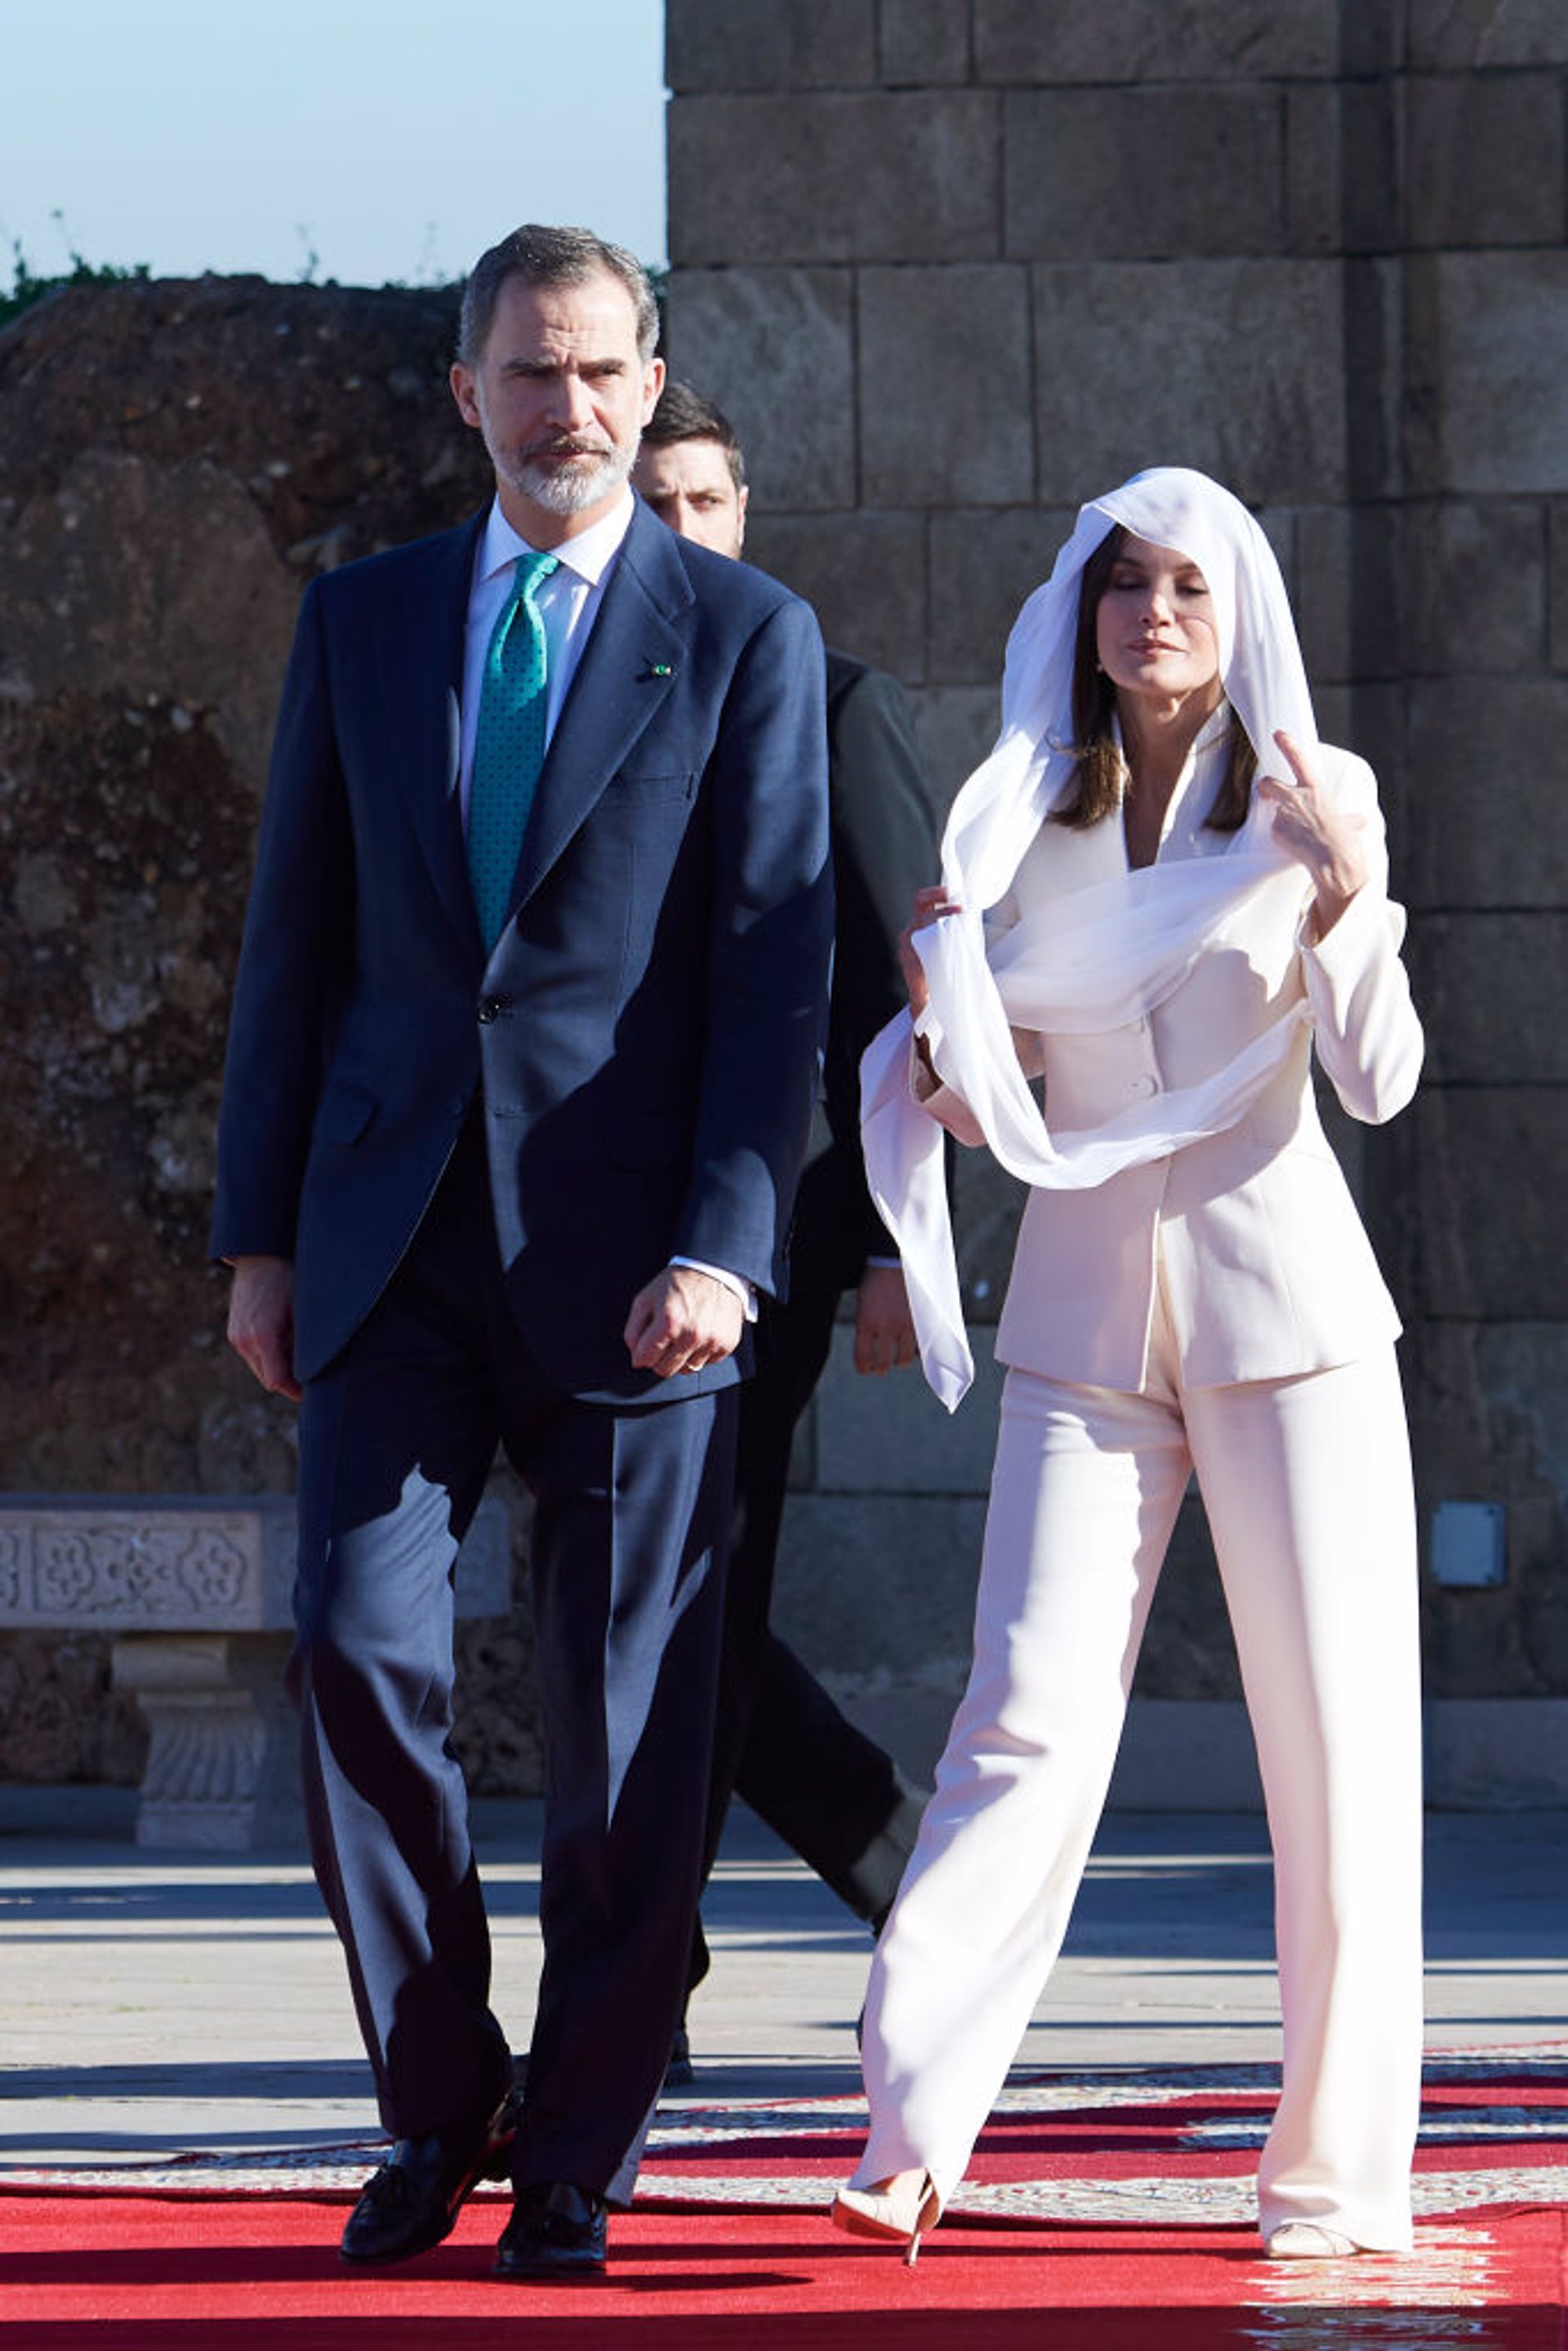 La Reina Letizia con velo ha lucido en Marruecos el traje de pedida de compromiso de Armani para ir al mausoleo marroquí